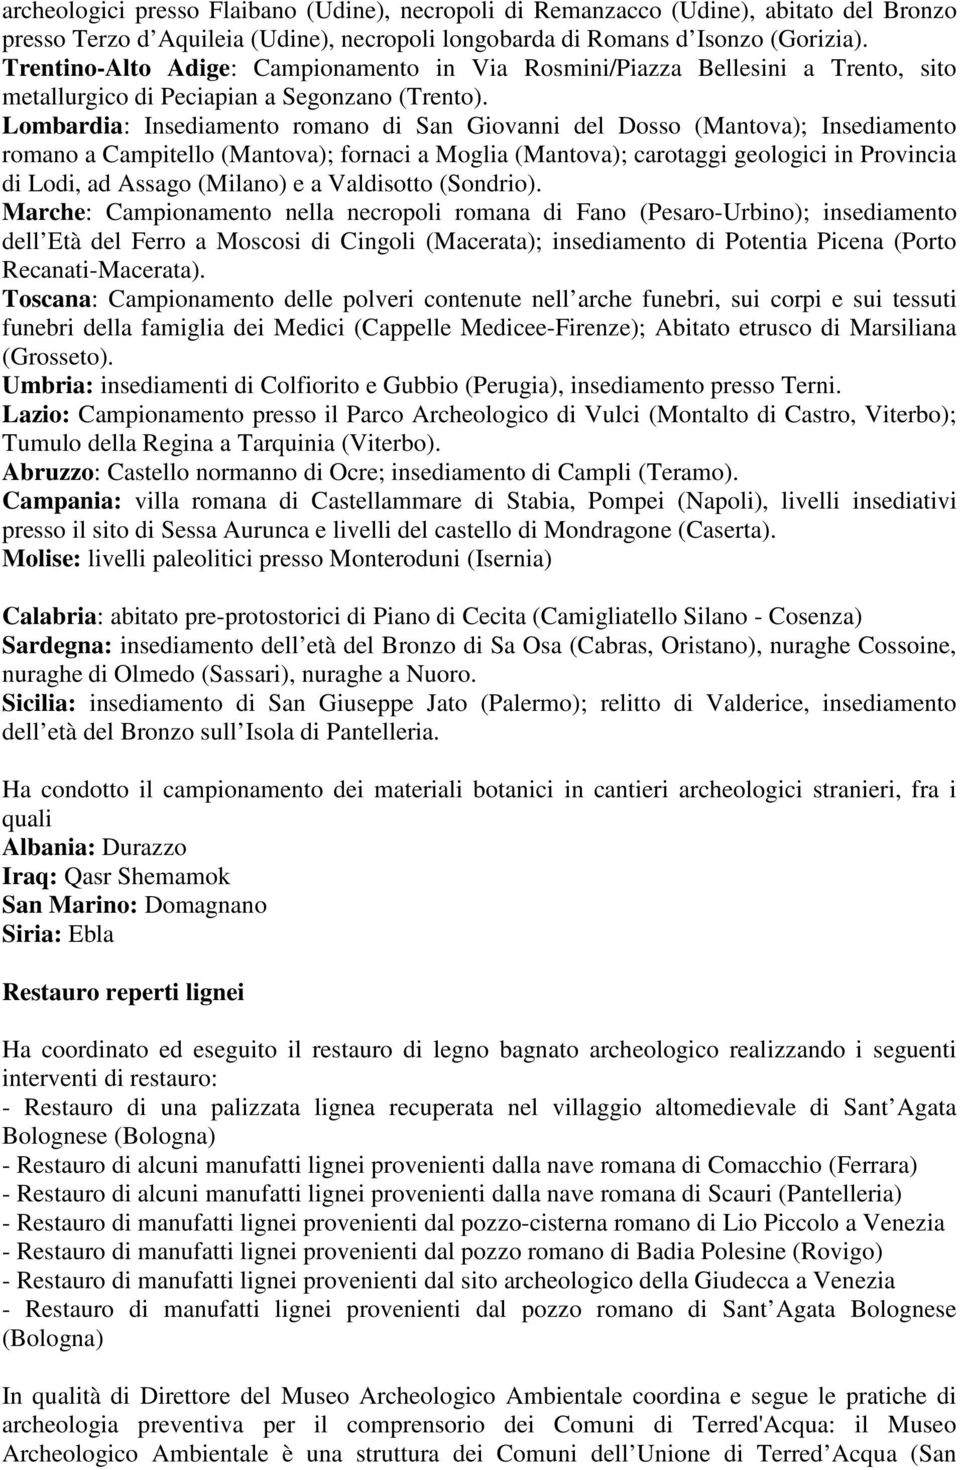 Lombardia: Insediamento romano di San Giovanni del Dosso (Mantova); Insediamento romano a Campitello (Mantova); fornaci a Moglia (Mantova); carotaggi geologici in Provincia di Lodi, ad Assago